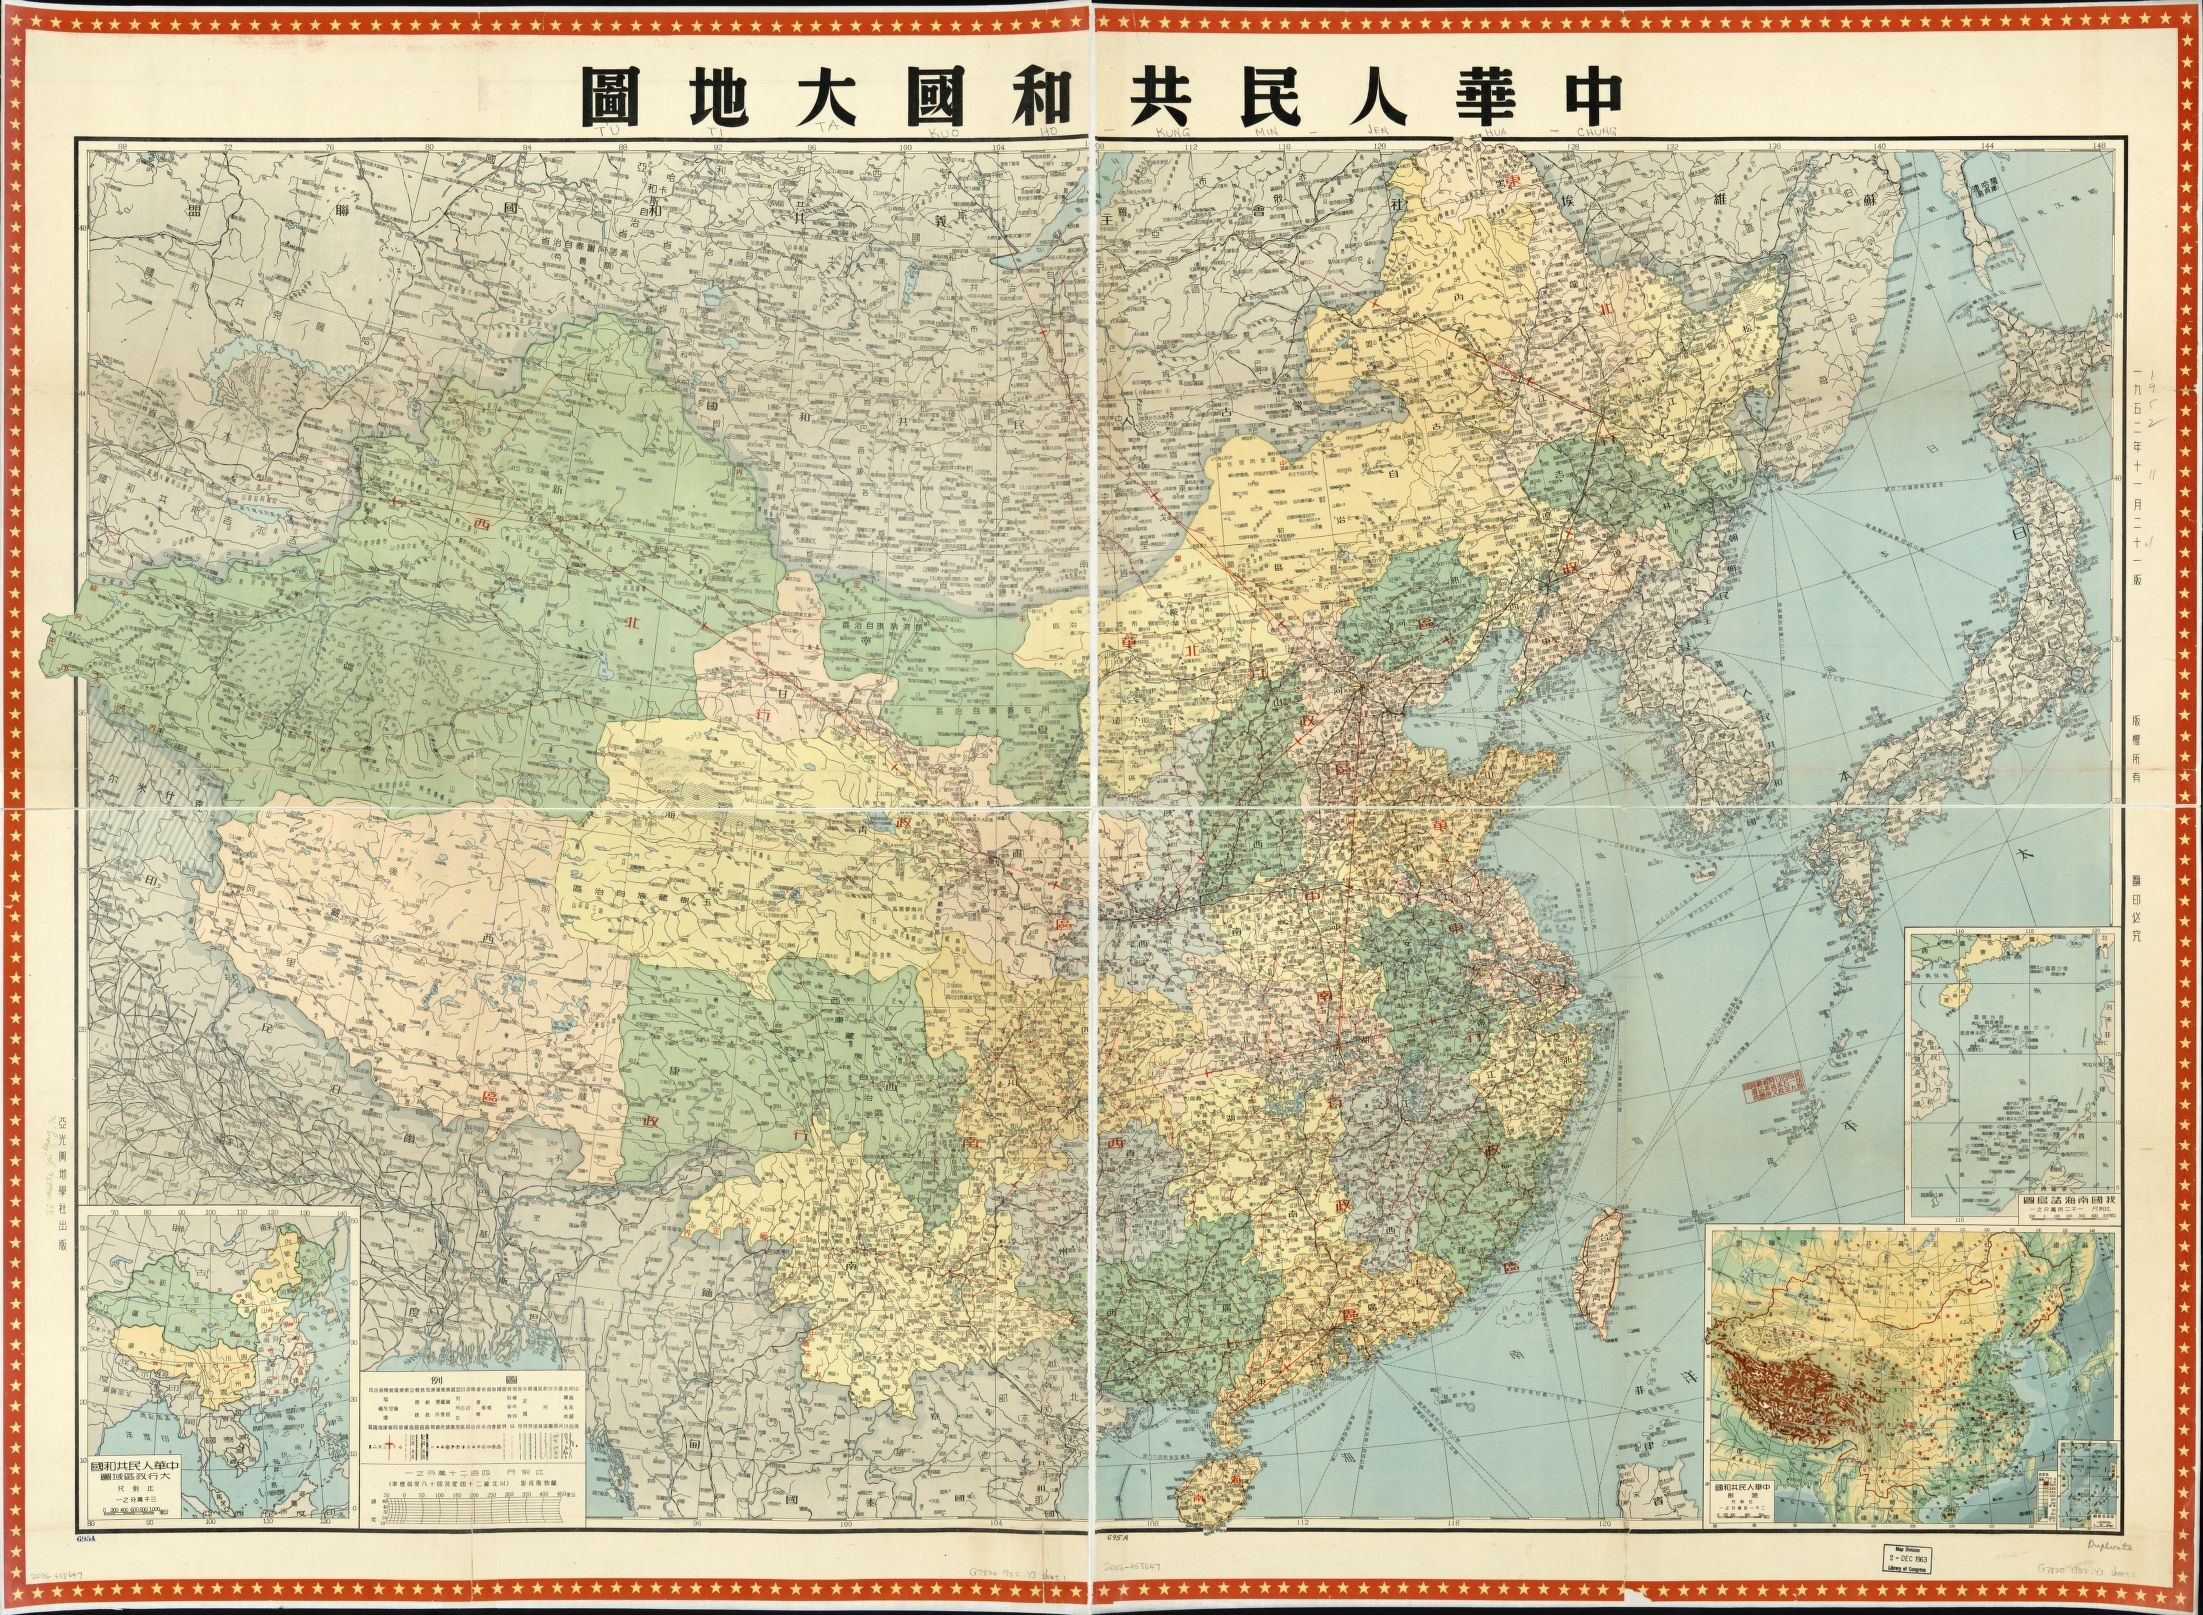 Map titled Zhōnghuá rénmín gònghéguó dà dìtú 圖地大國和共民人華中 (Library of Congress, 1963)